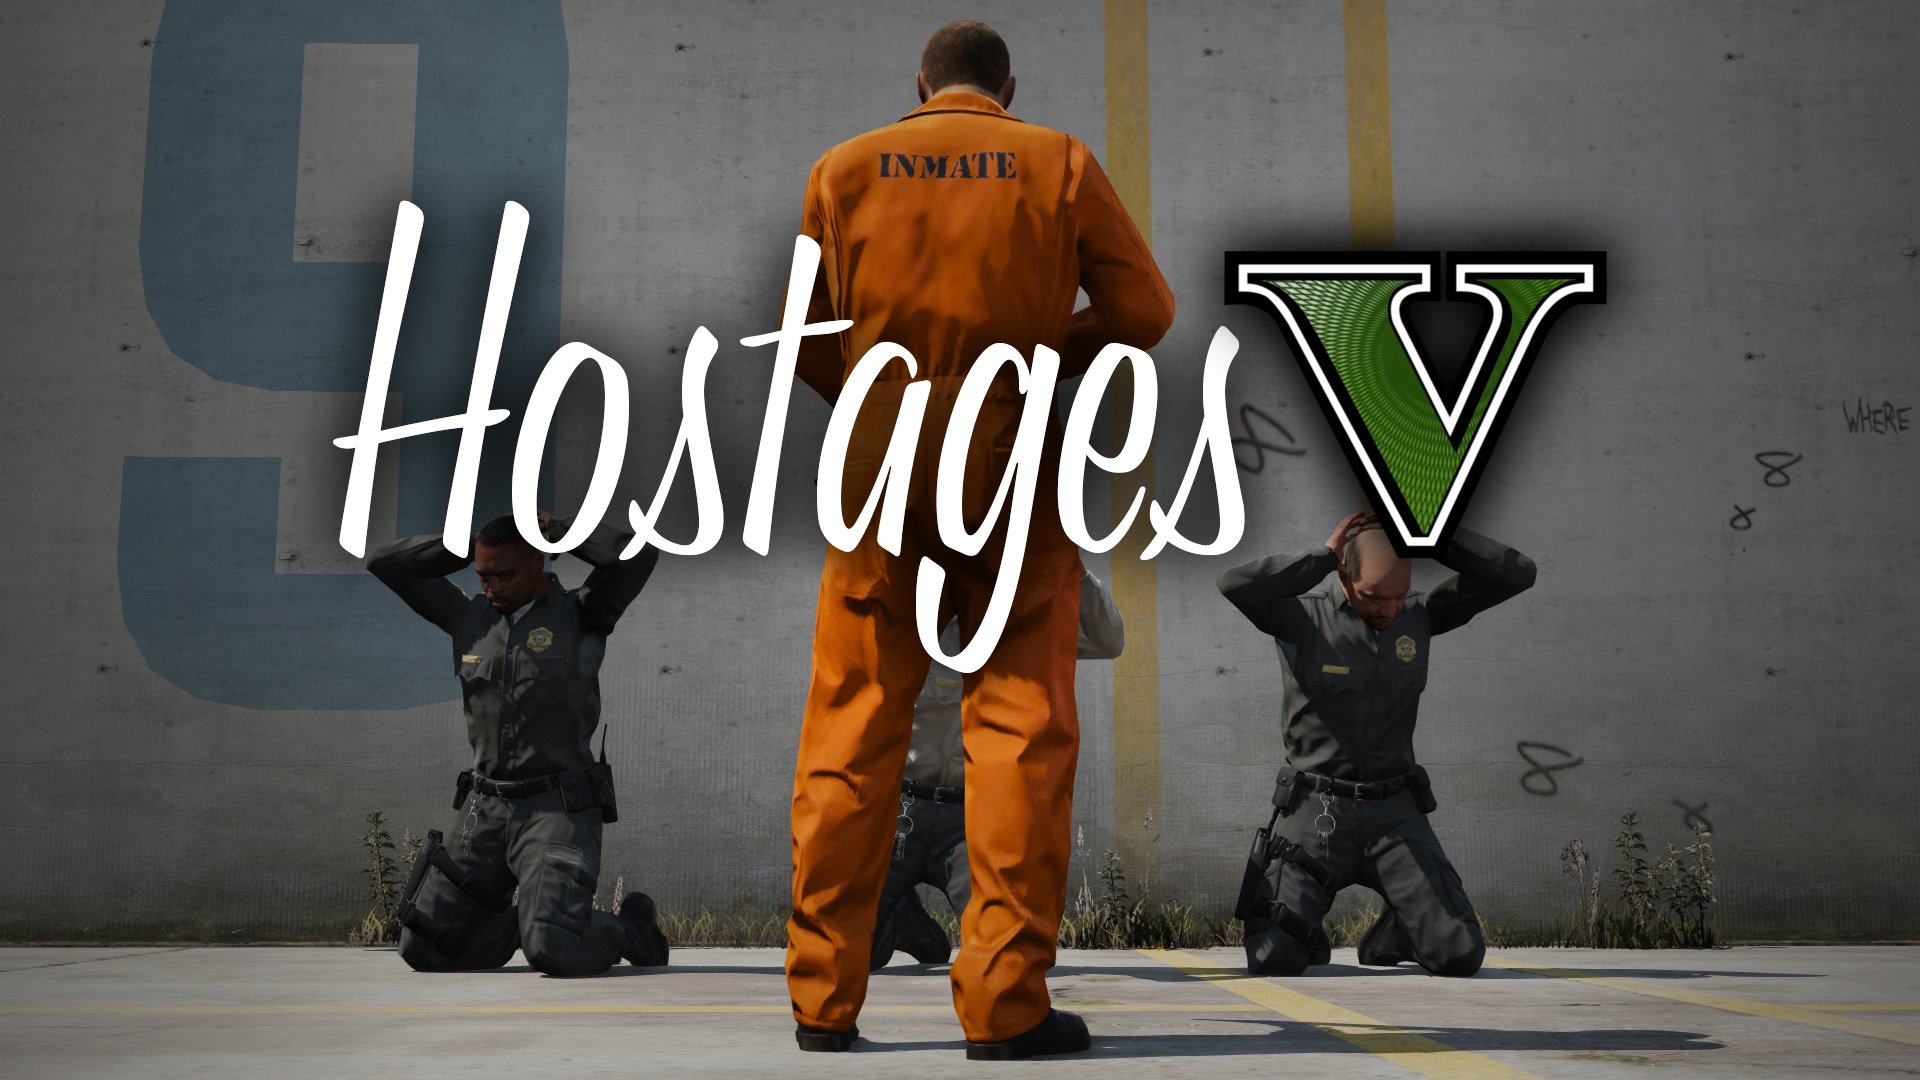 Hostage #21